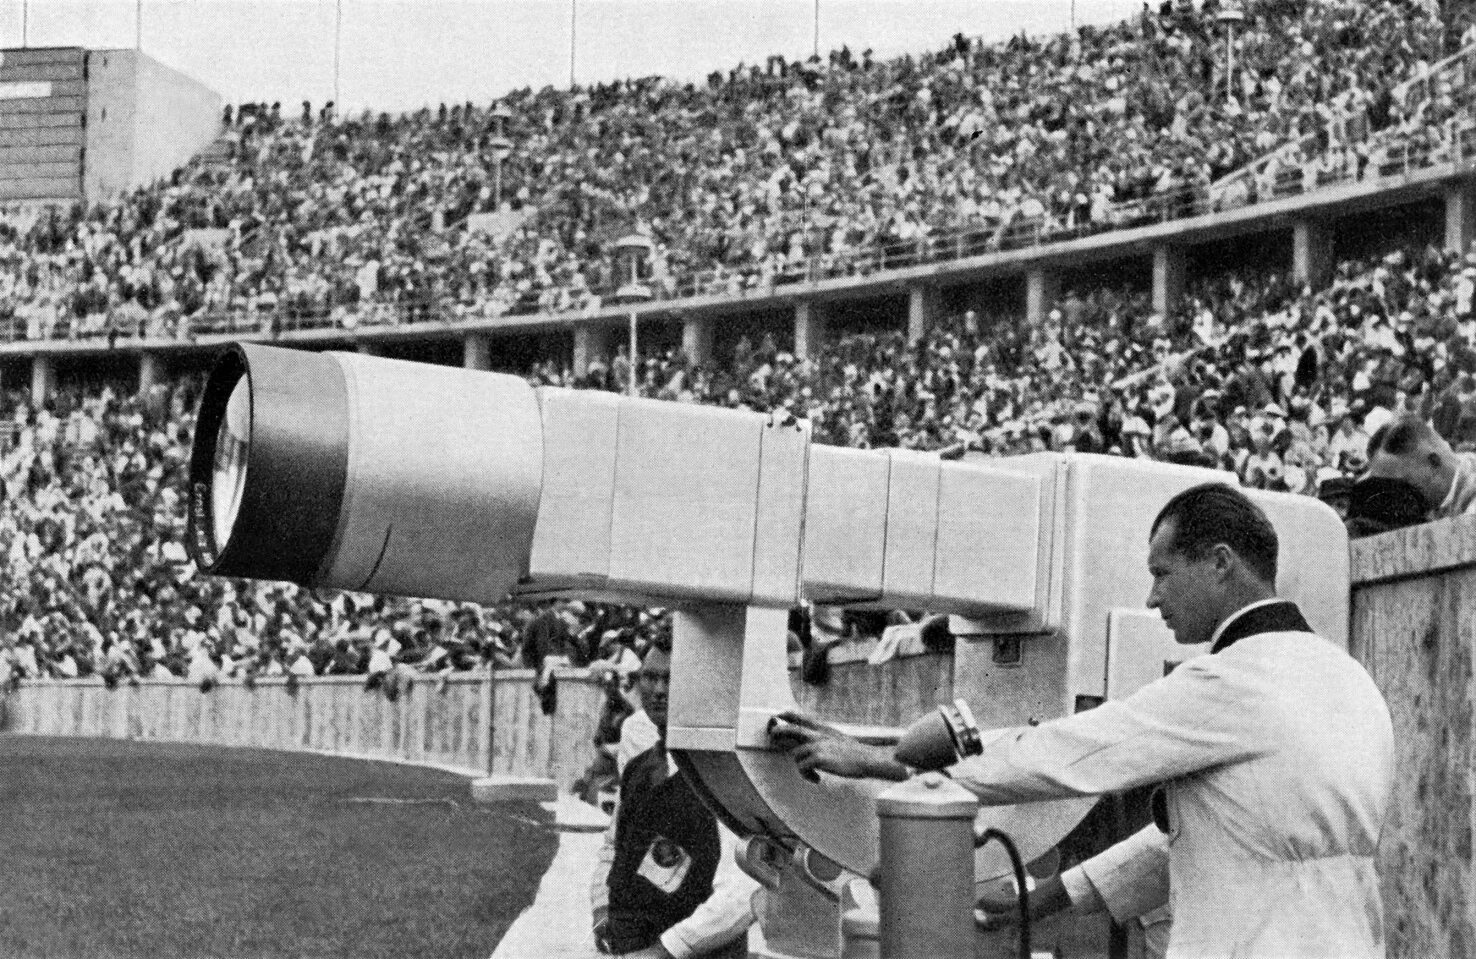 Трансляция канала история. Олимпийские игры в Берлине 1936.